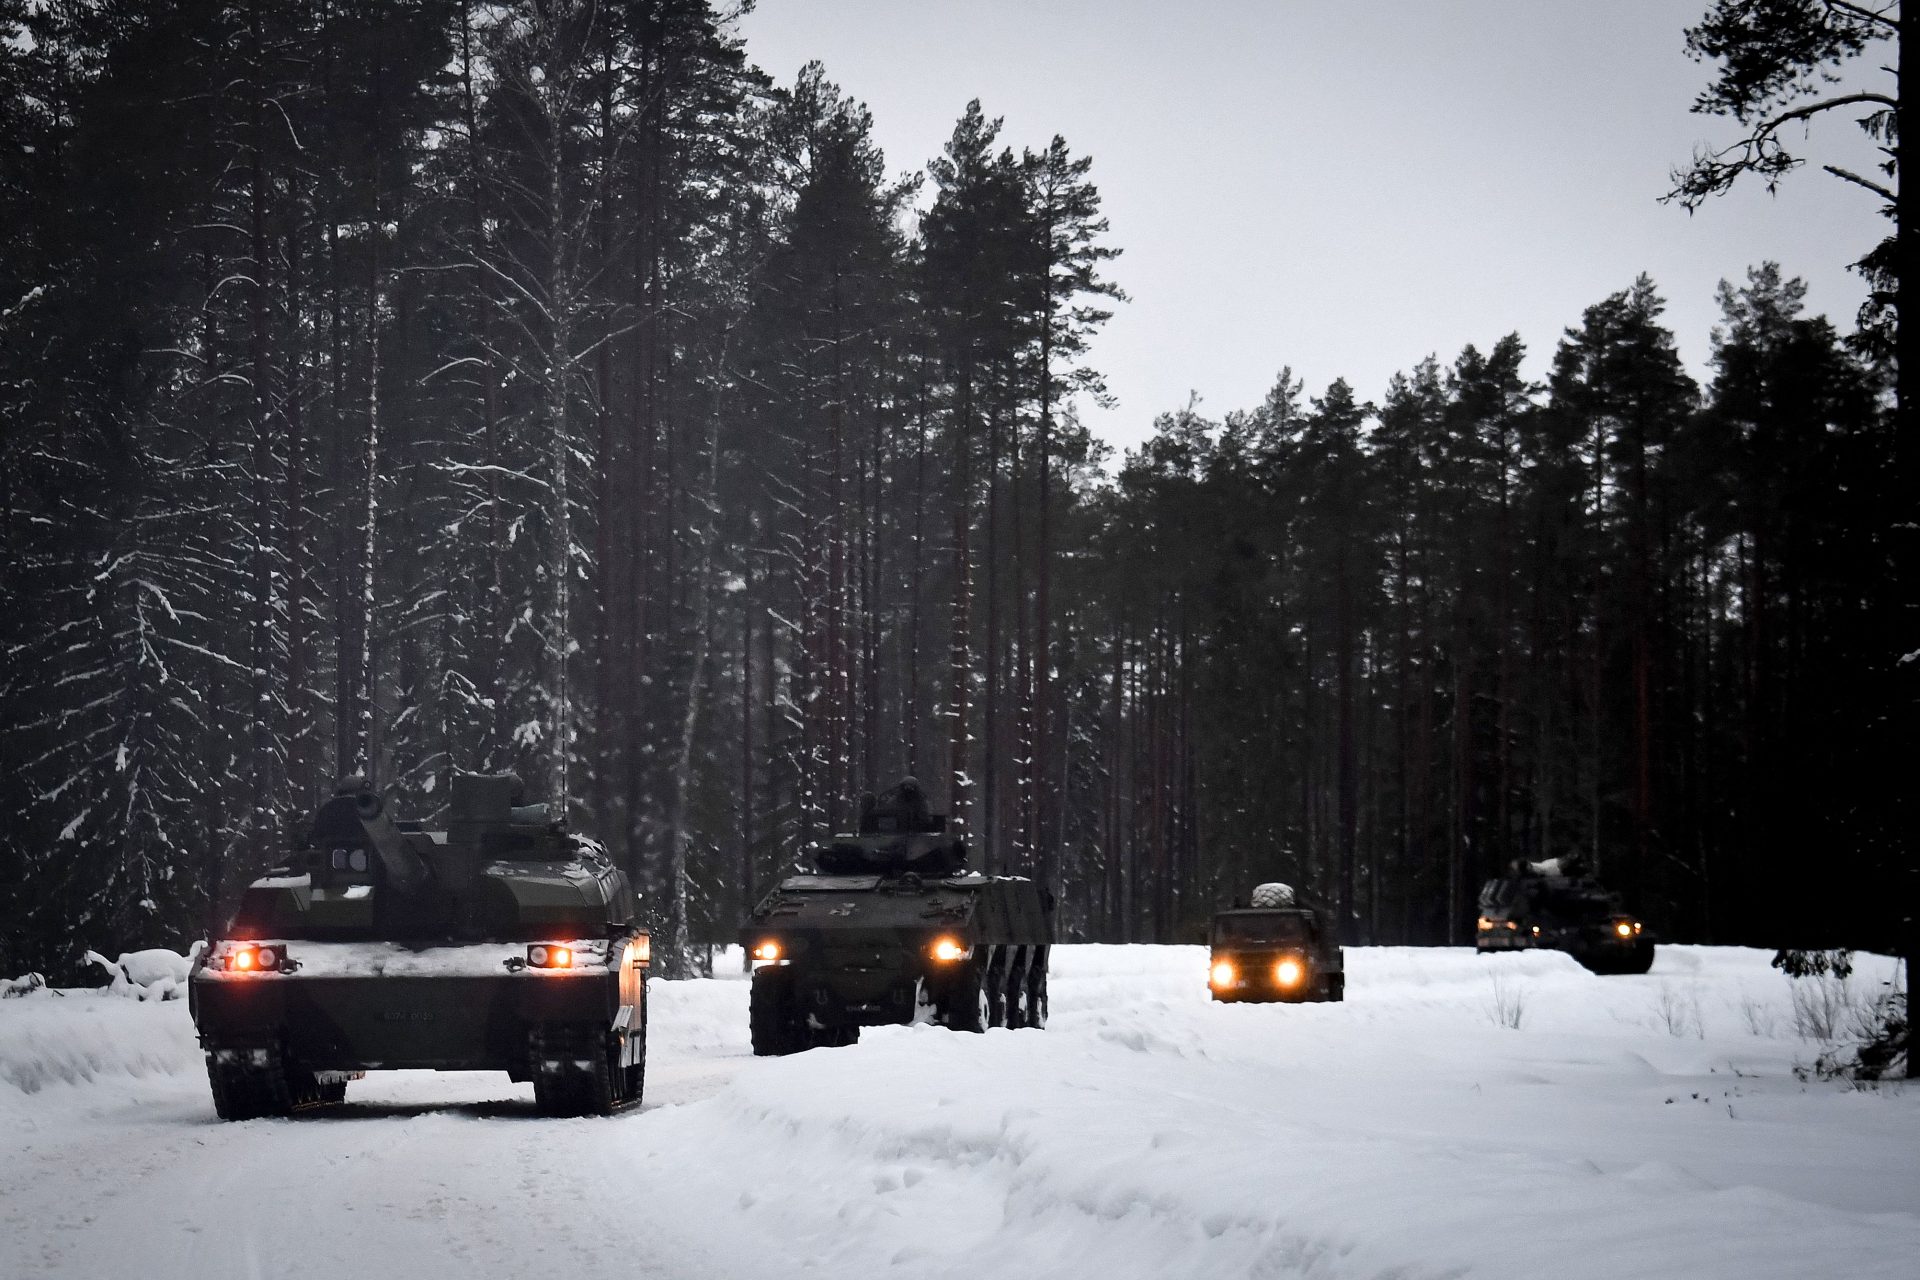 Vormt Rusland een ernstige bedreiging voor de Baltische staten?